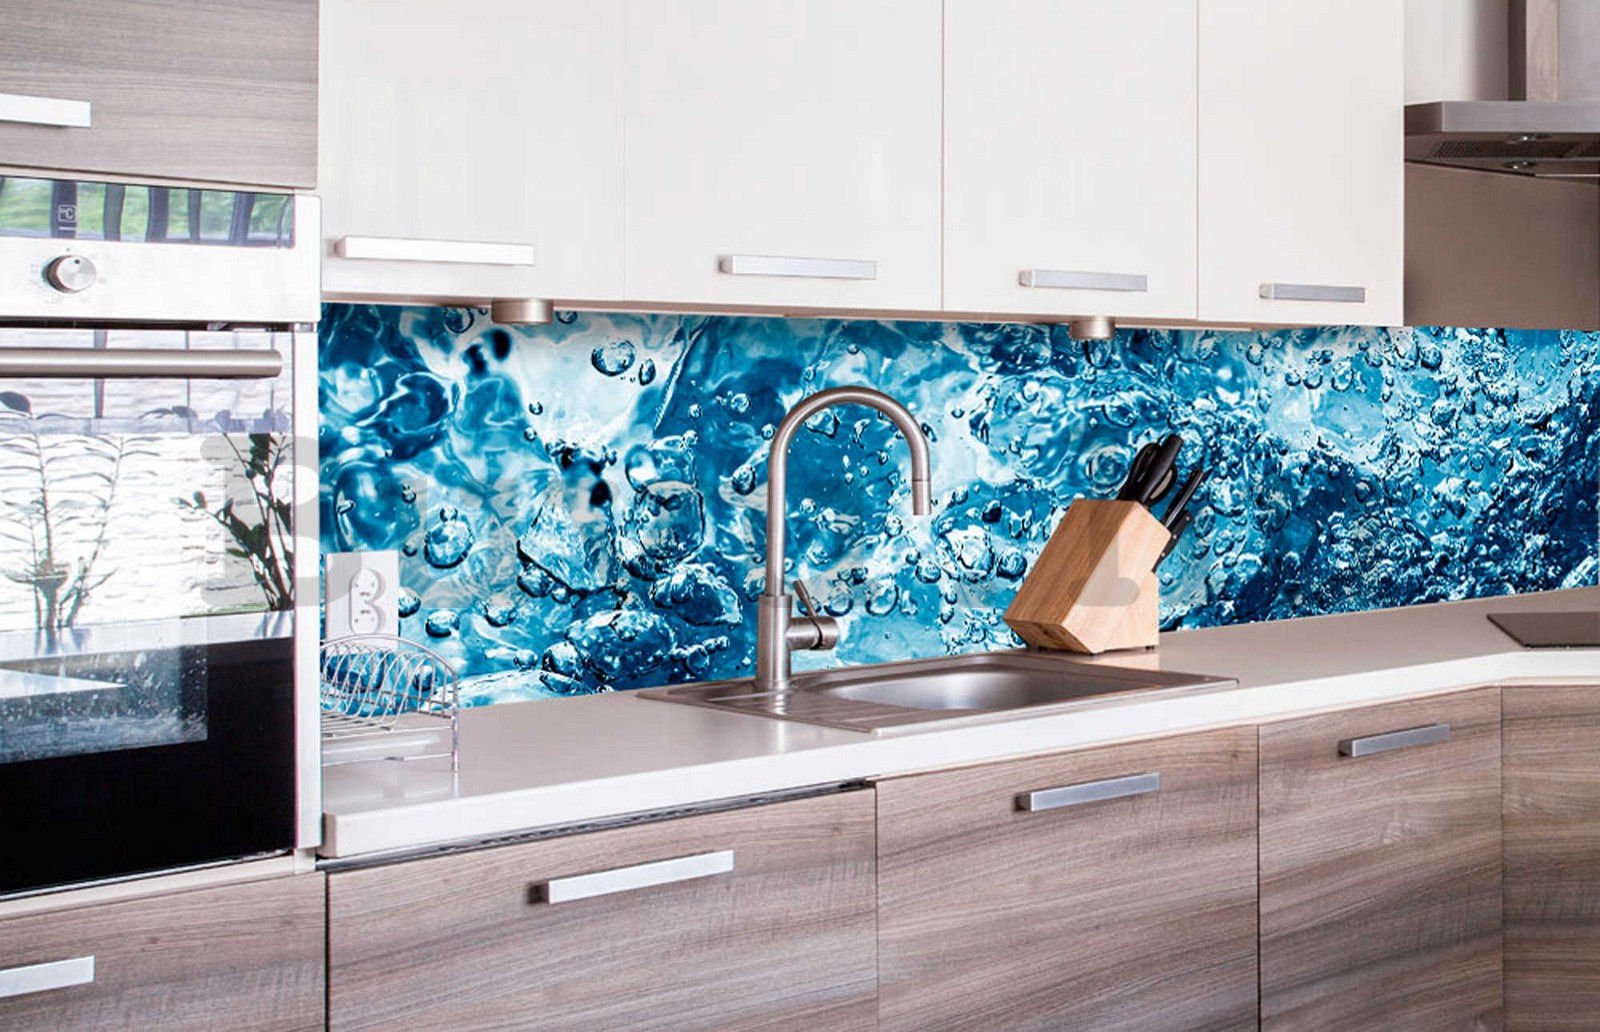 Öntapadós mosható tapéta konyhába - Szénsavas víz, 260x60 cm